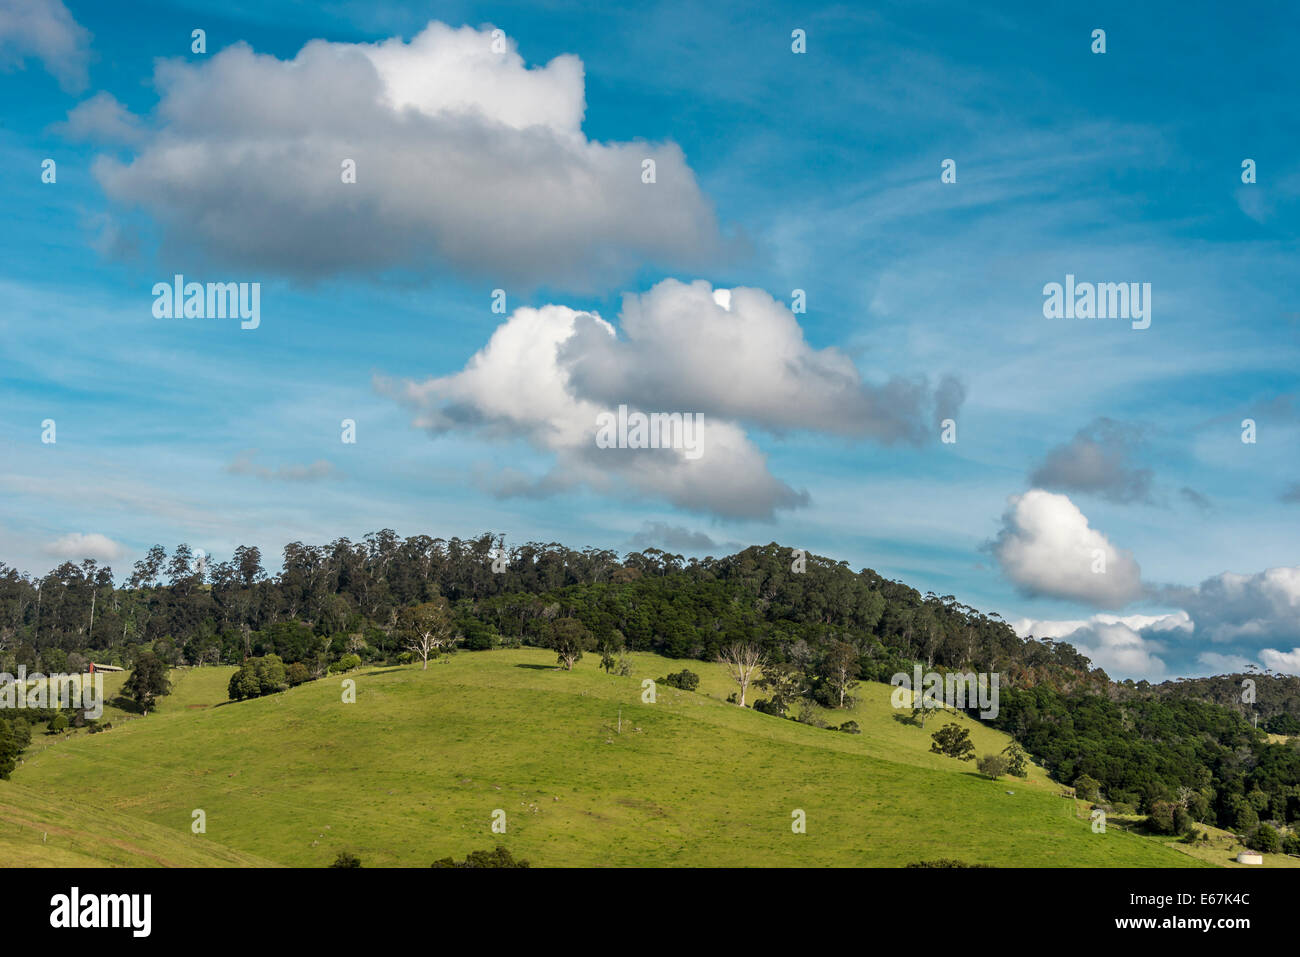 Collines pastural contre terre et ciel bleu ciel duveteux, Nethercote district agricole, Eden, NSW Australie Banque D'Images